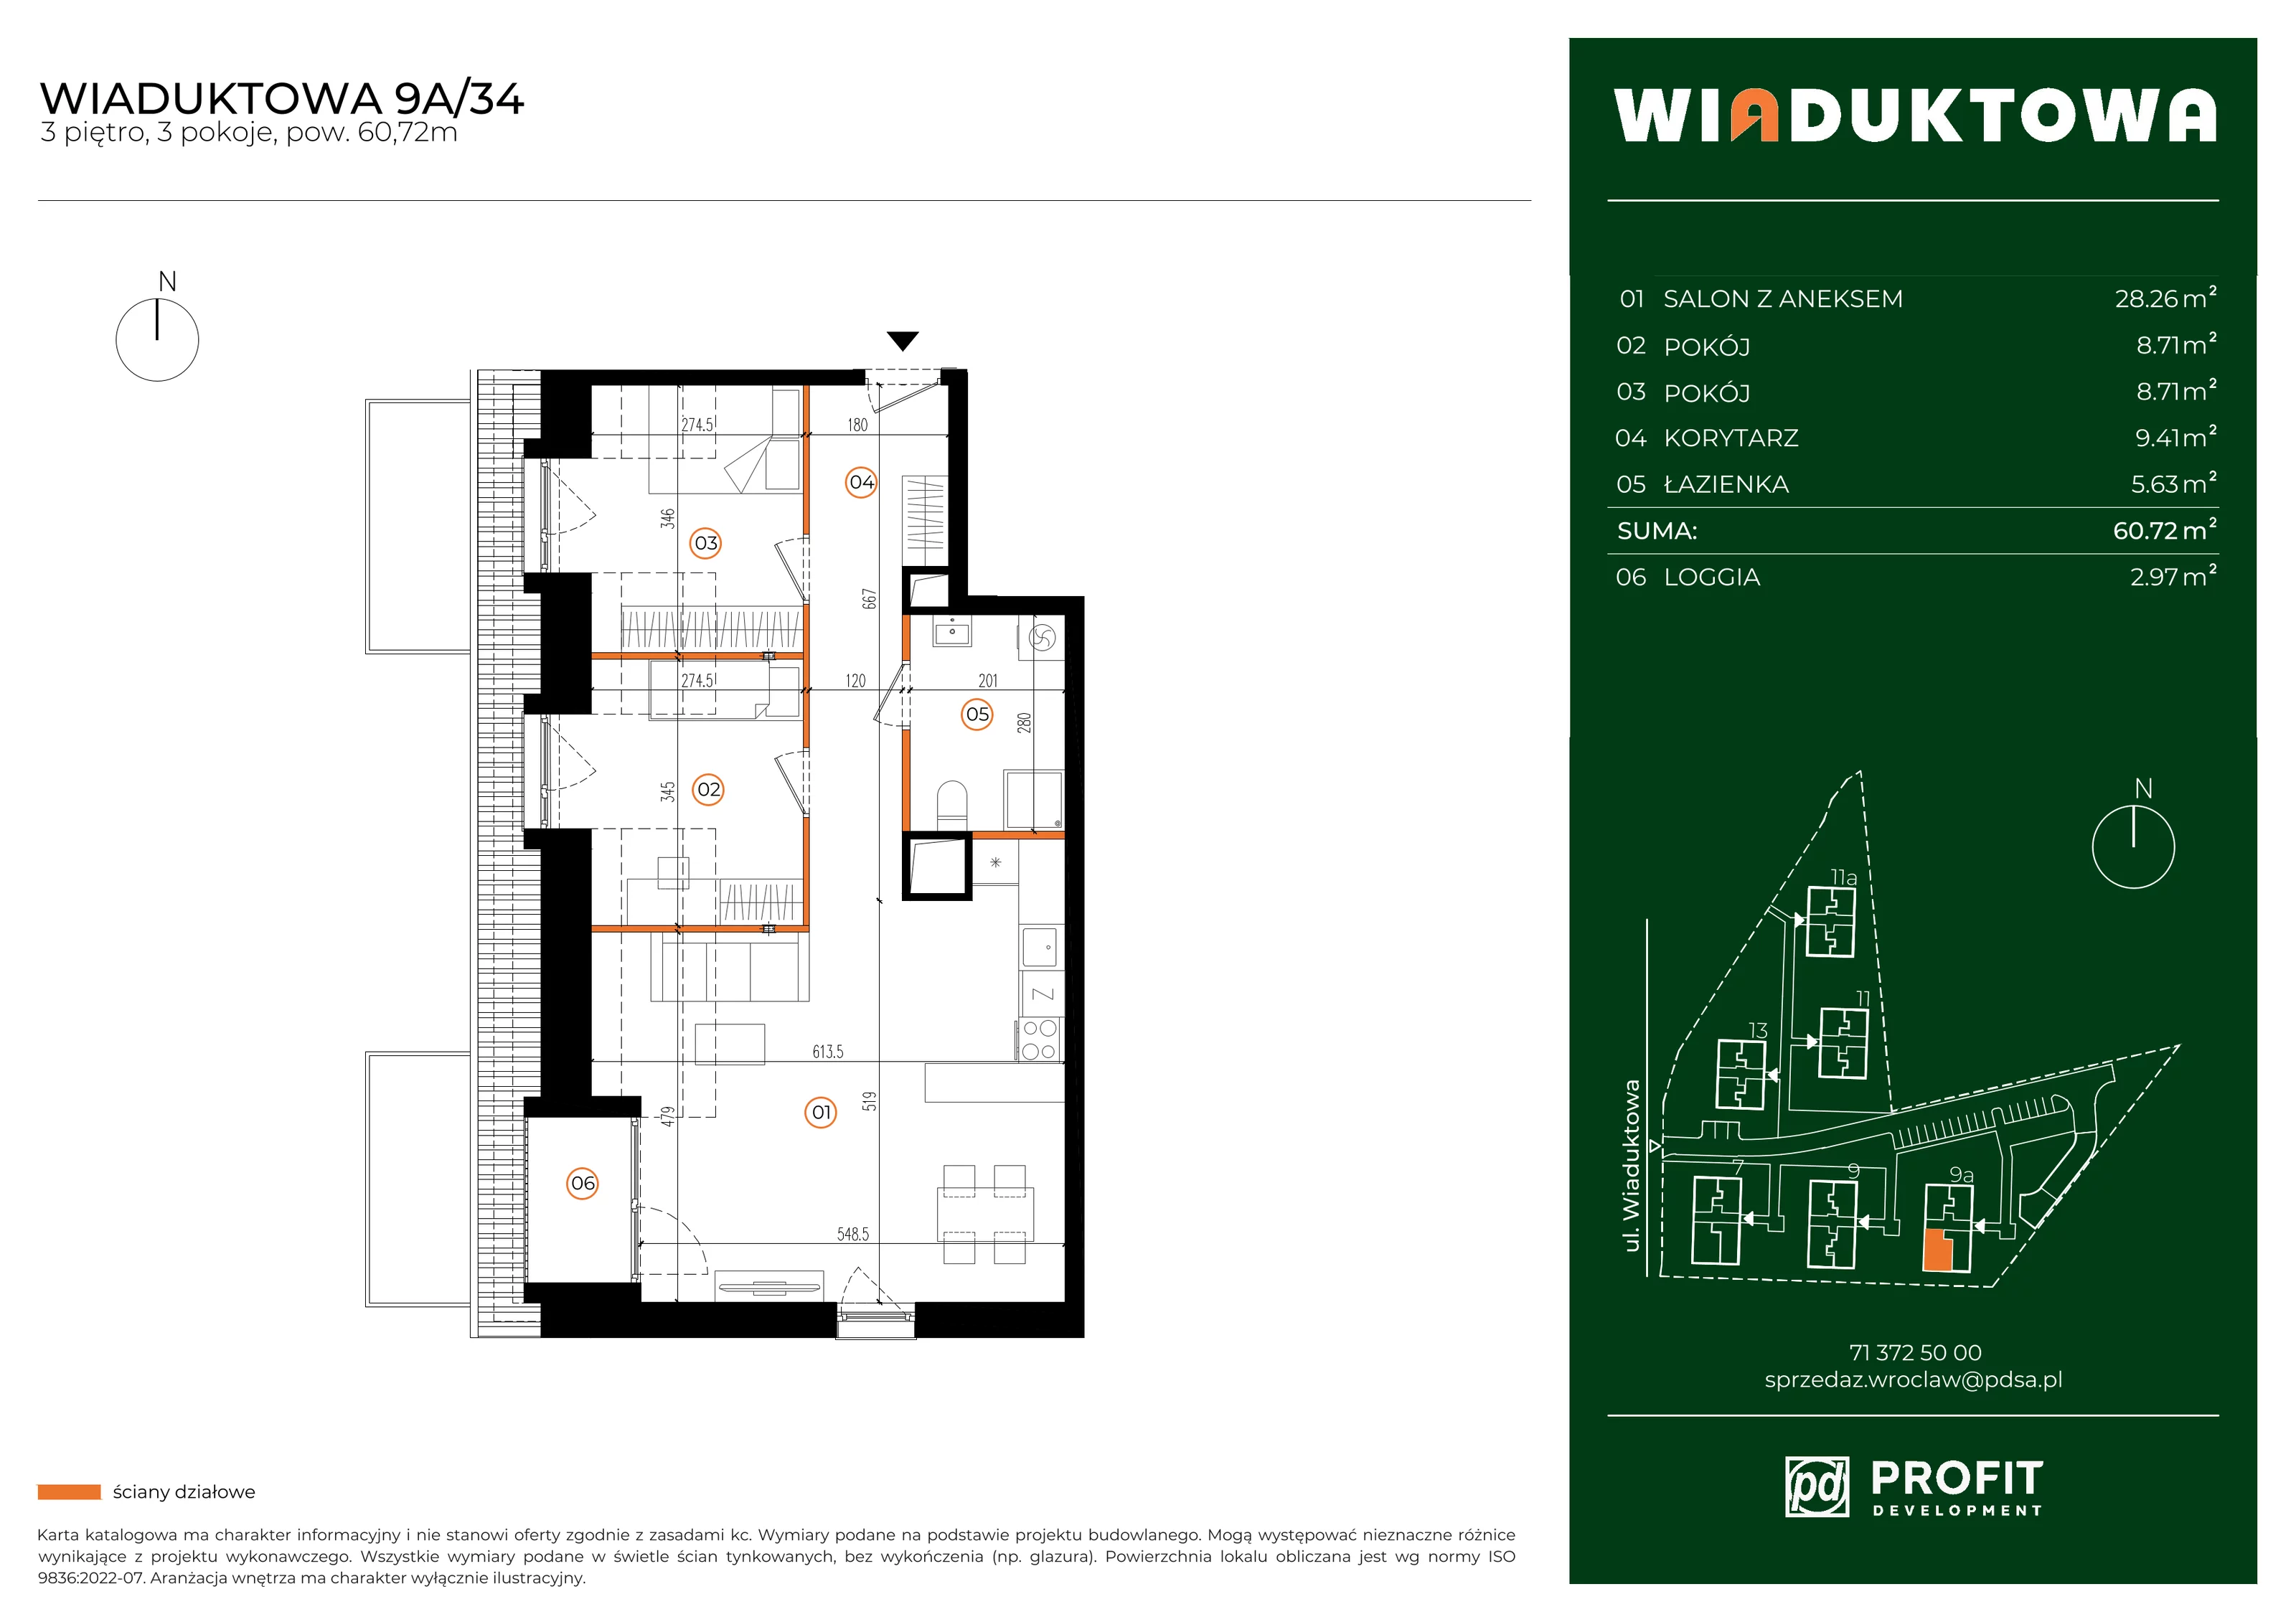 Mieszkanie 60,72 m², piętro 3, oferta nr WI/9A/34, Wiaduktowa, Wrocław, Krzyki-Partynice, Krzyki, ul. Wiaduktowa